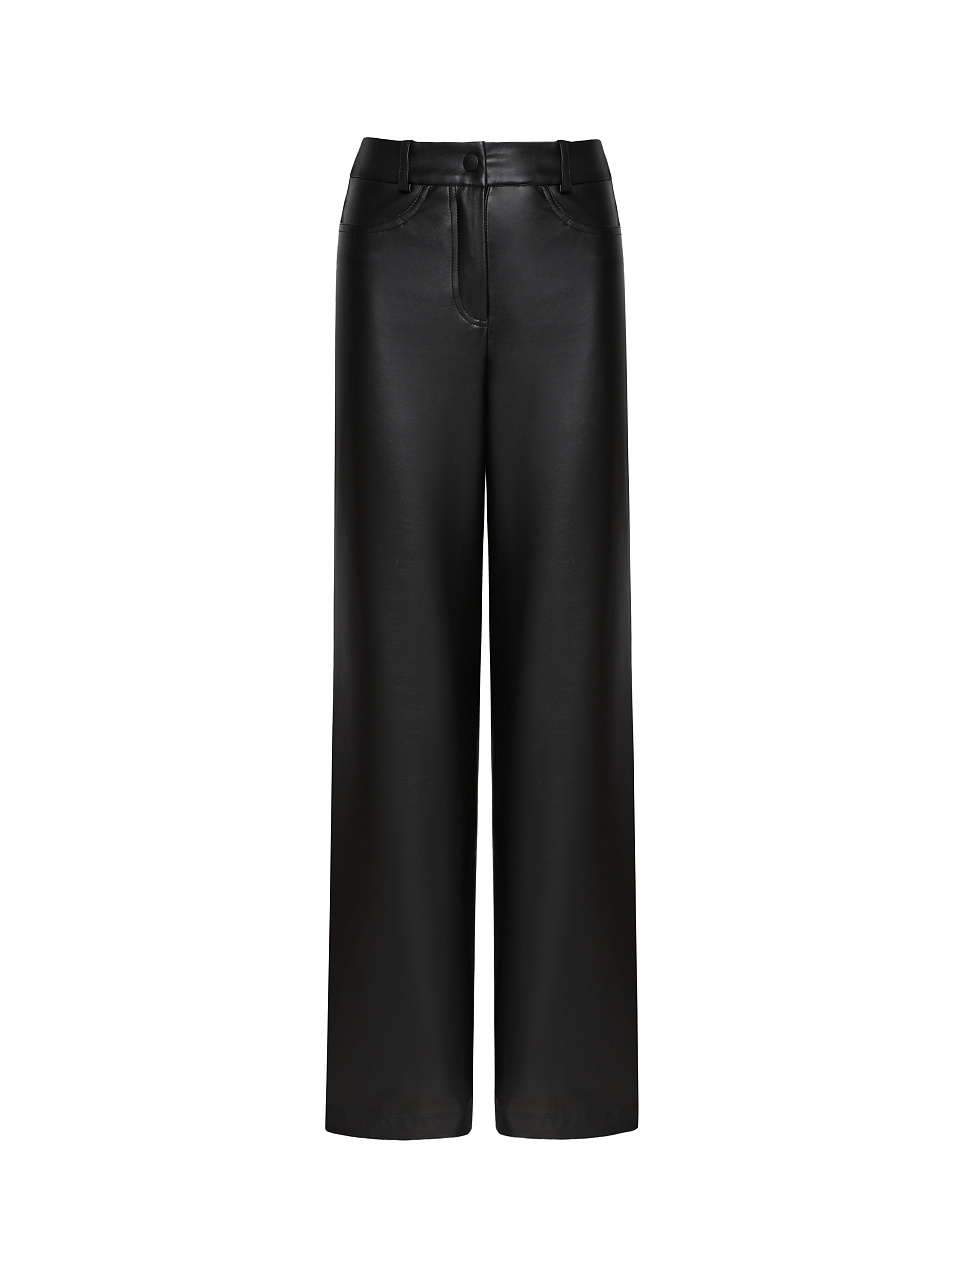 Жіночі штани Stimma Тавіта, колір - чорний